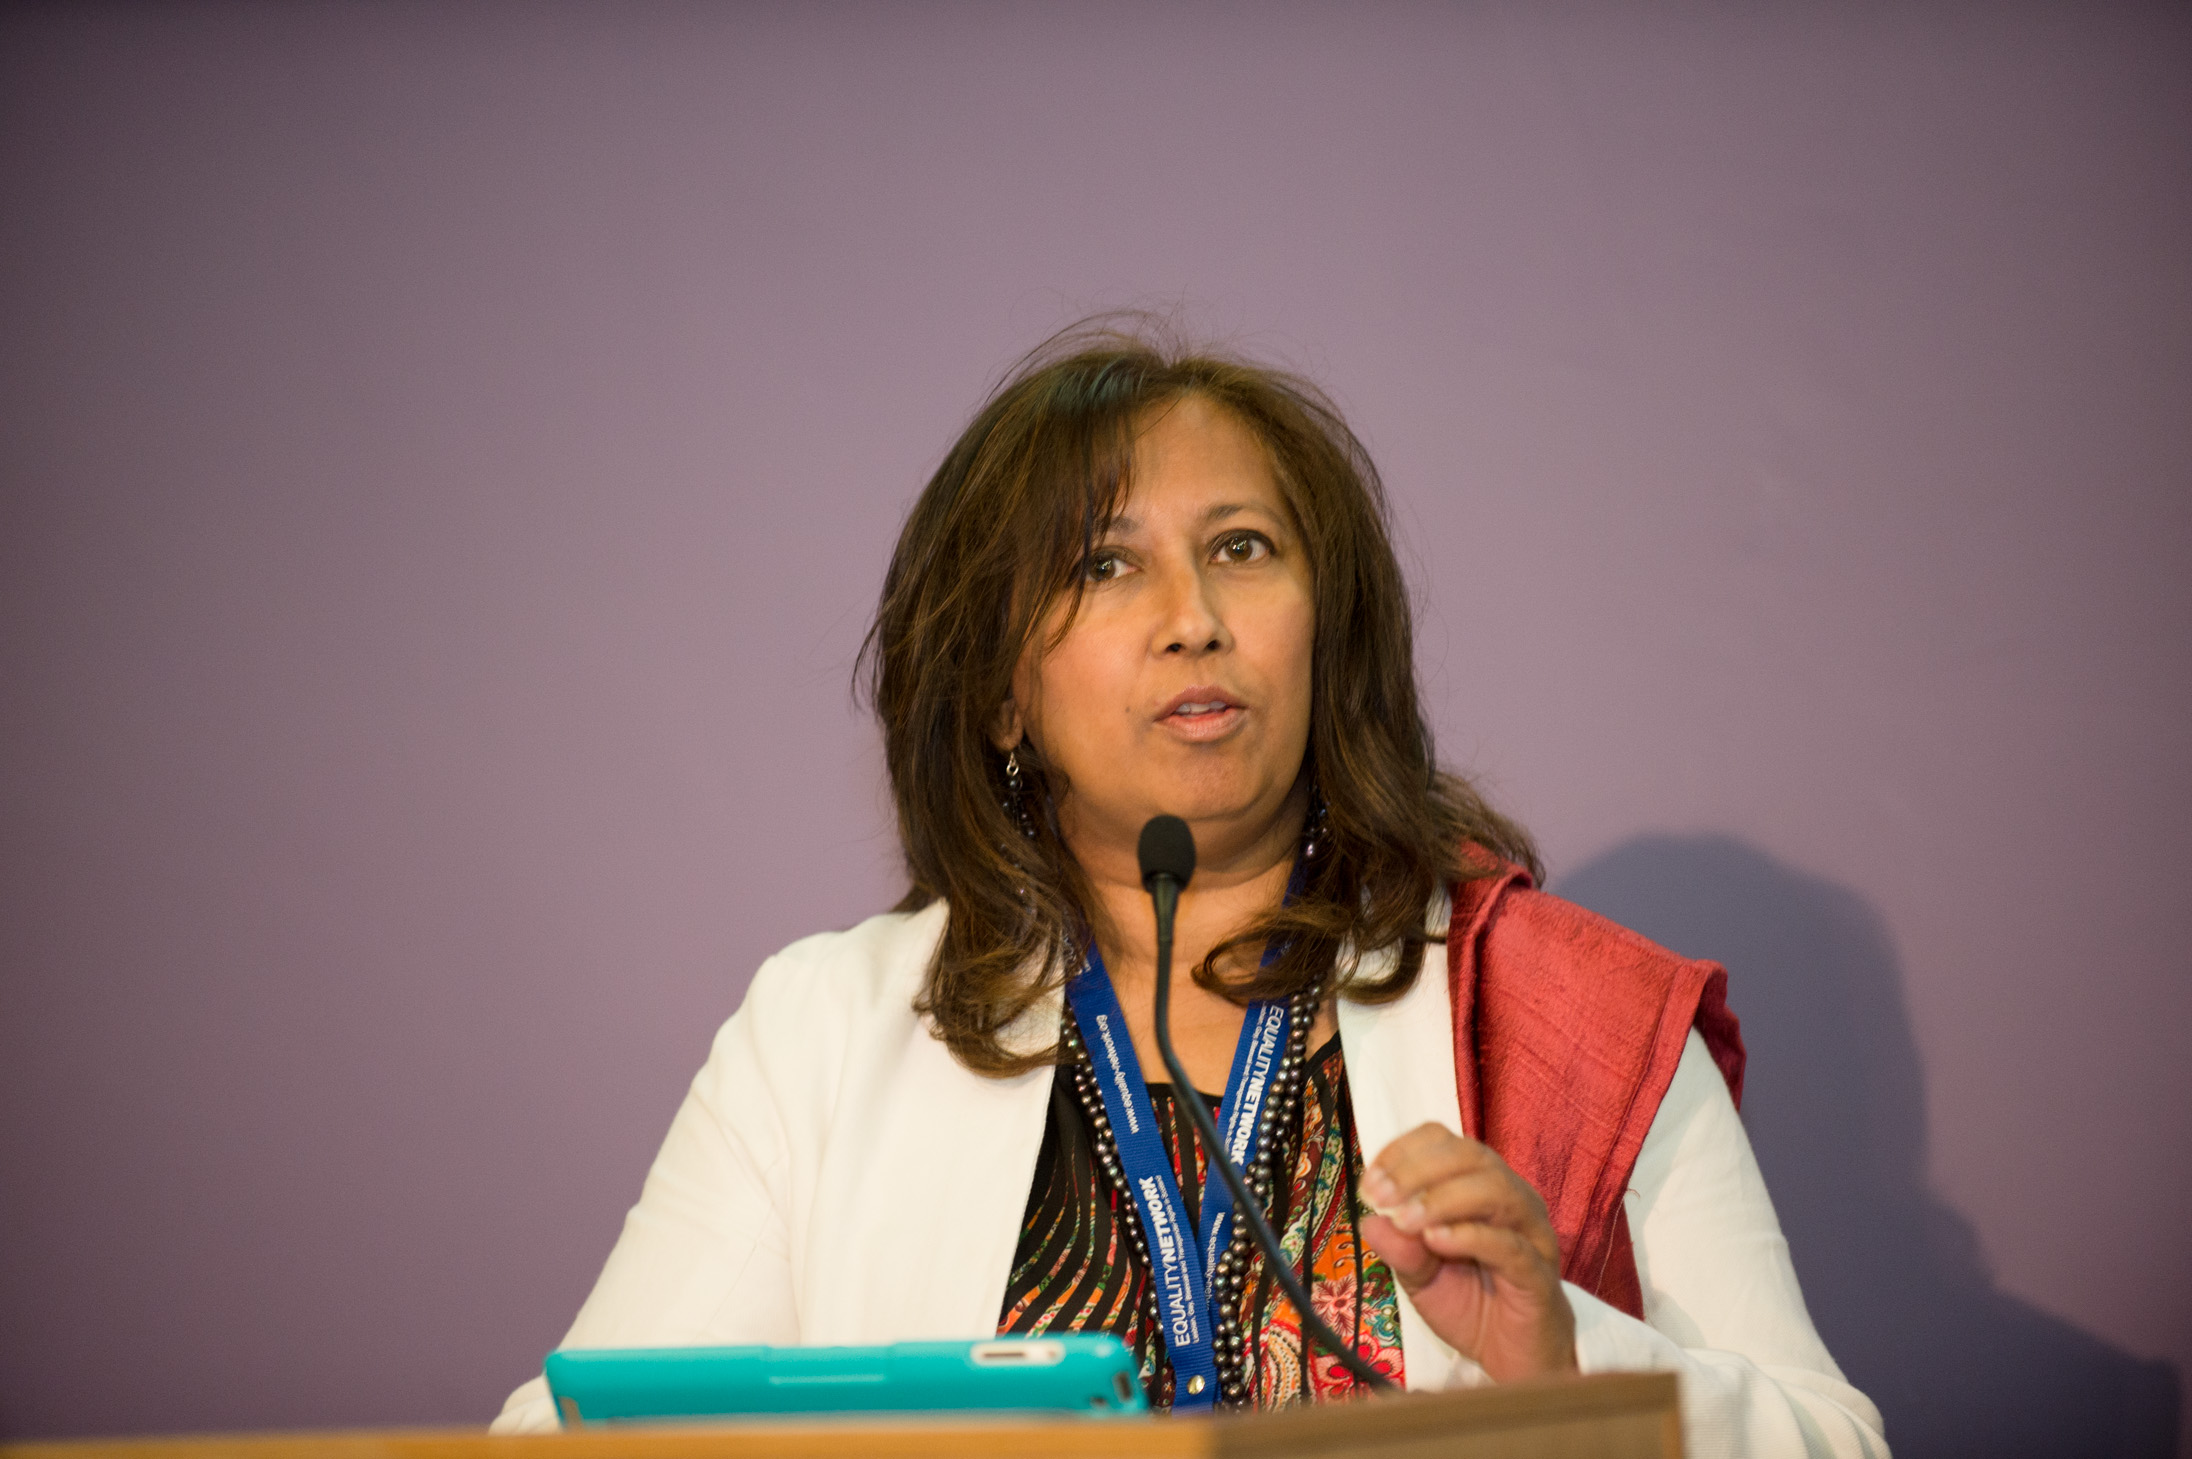 Purna Sen, Chair of Kaleidoscope Trust